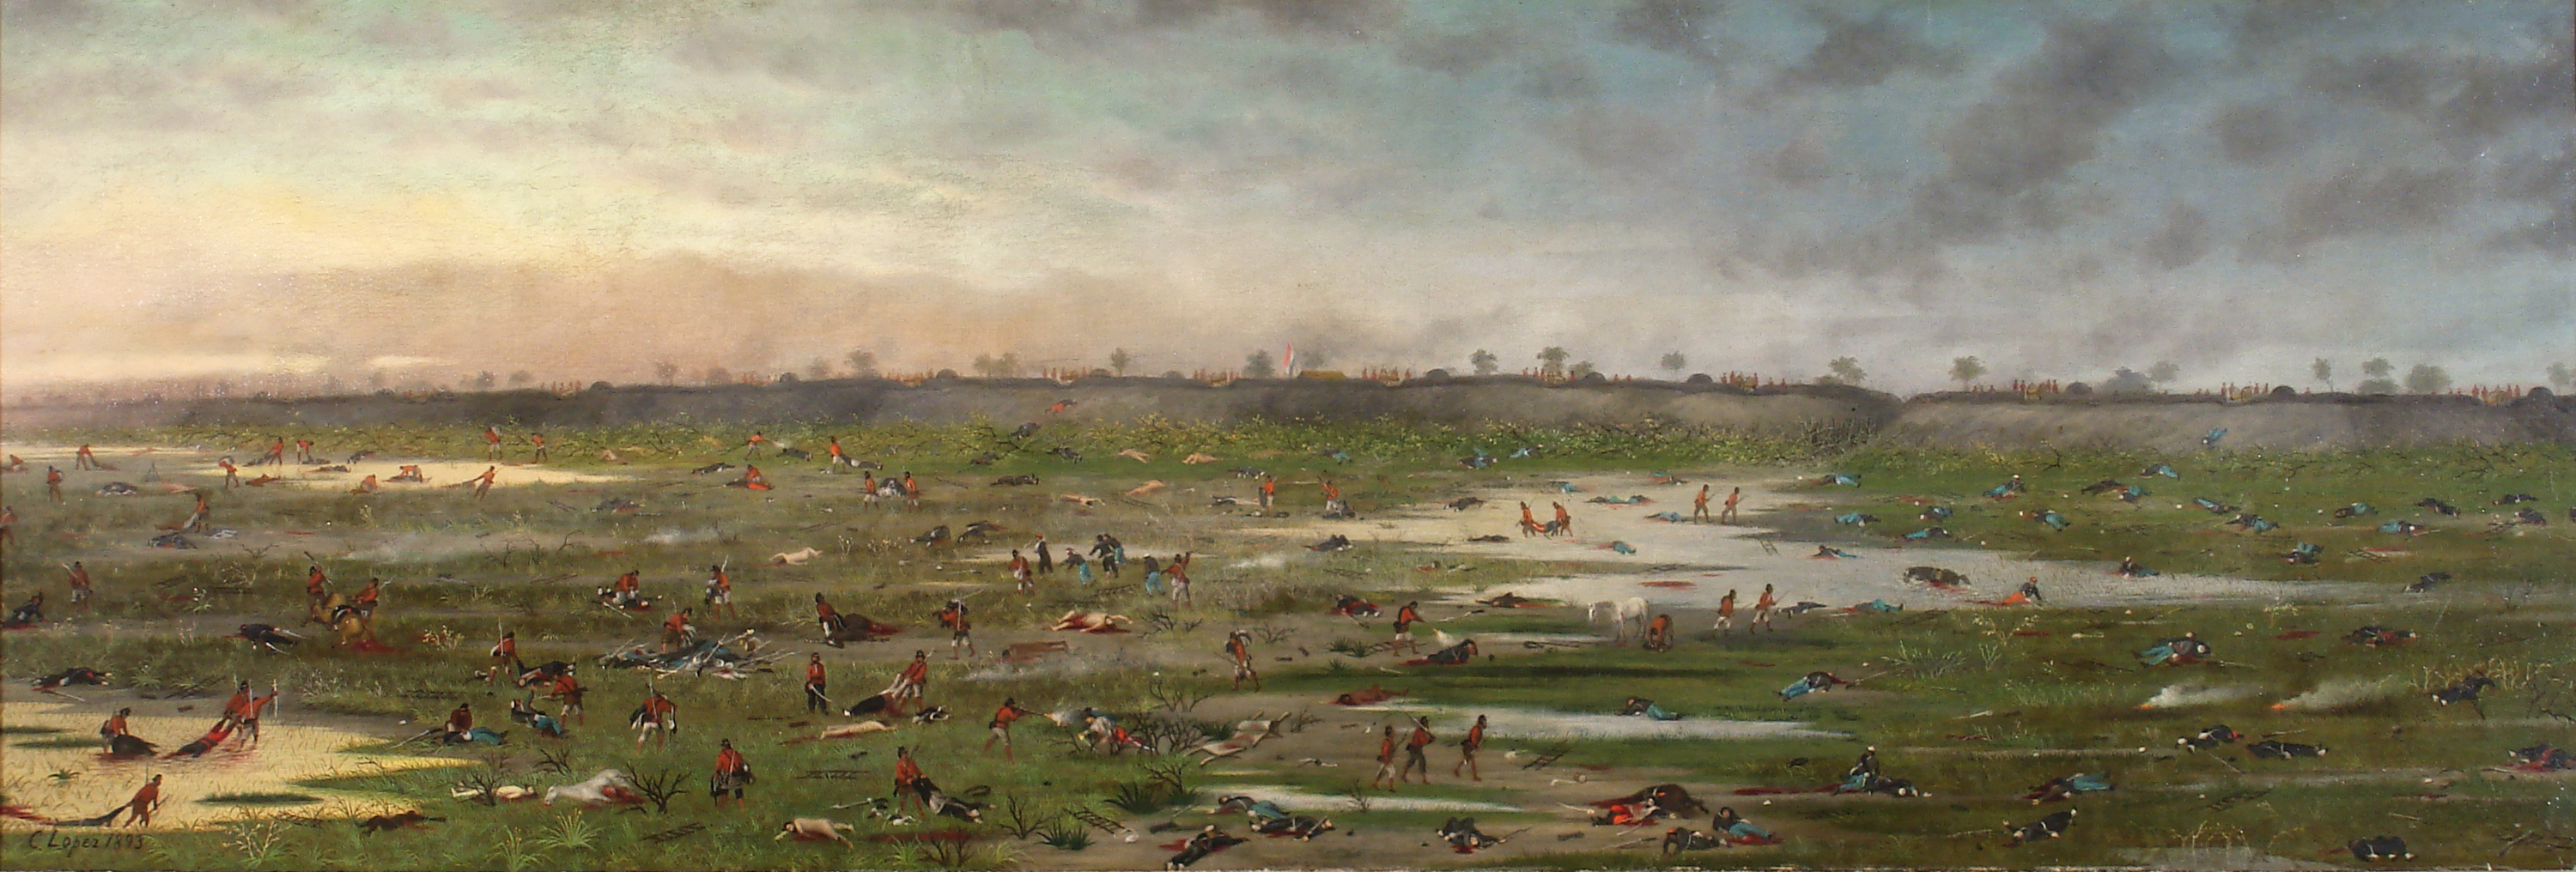 پس از نبرد کوروپایتی by Cándido López - 1893 میلادی - 50,6 x 149,5 سانتی متر 